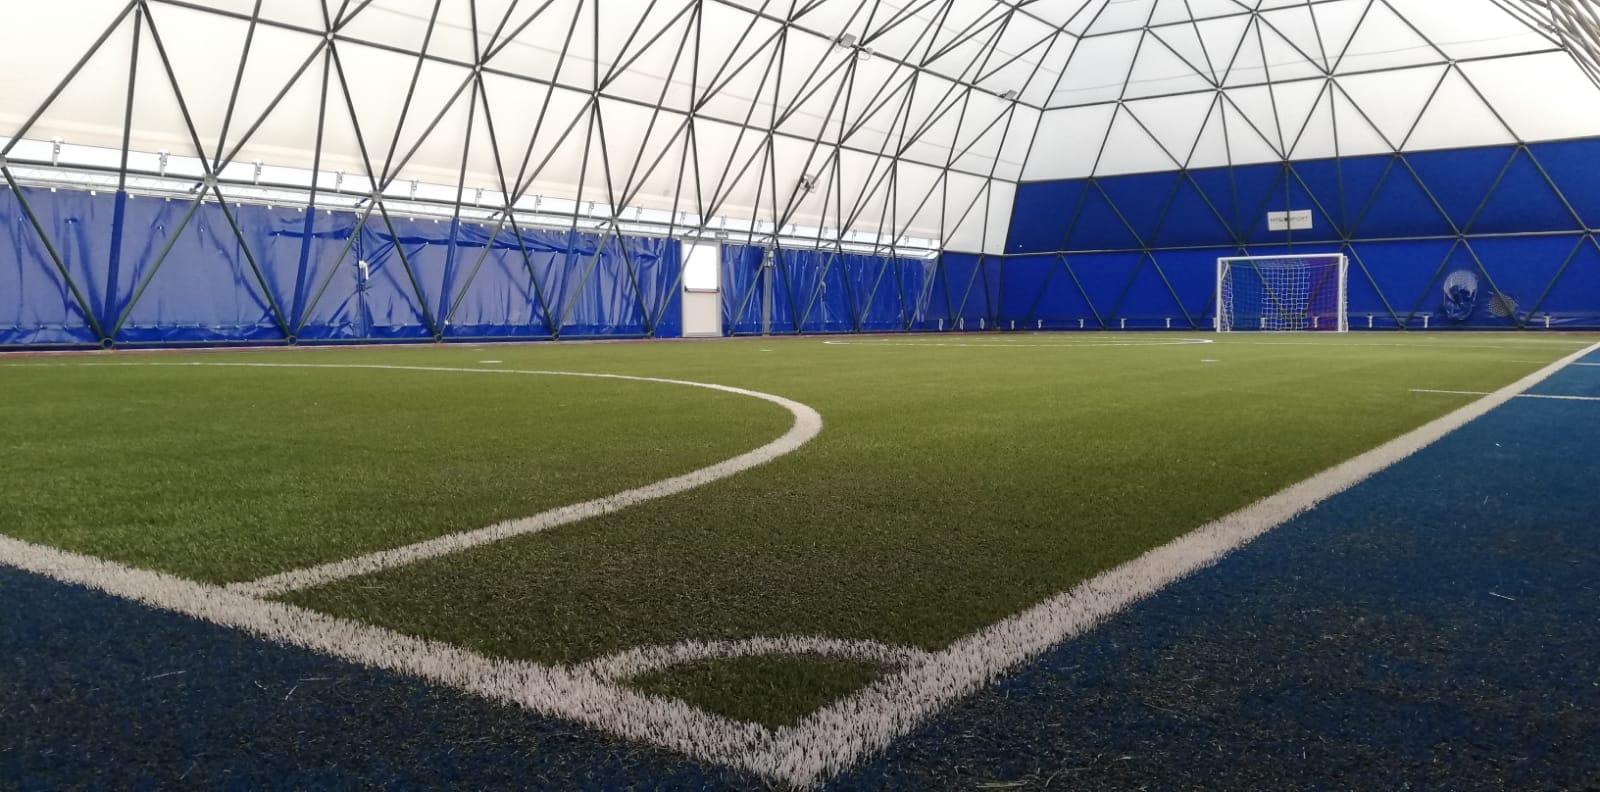 Nuove strutture sportive a Gerenzano: tensostruttura e sintetico per il calcio a 5